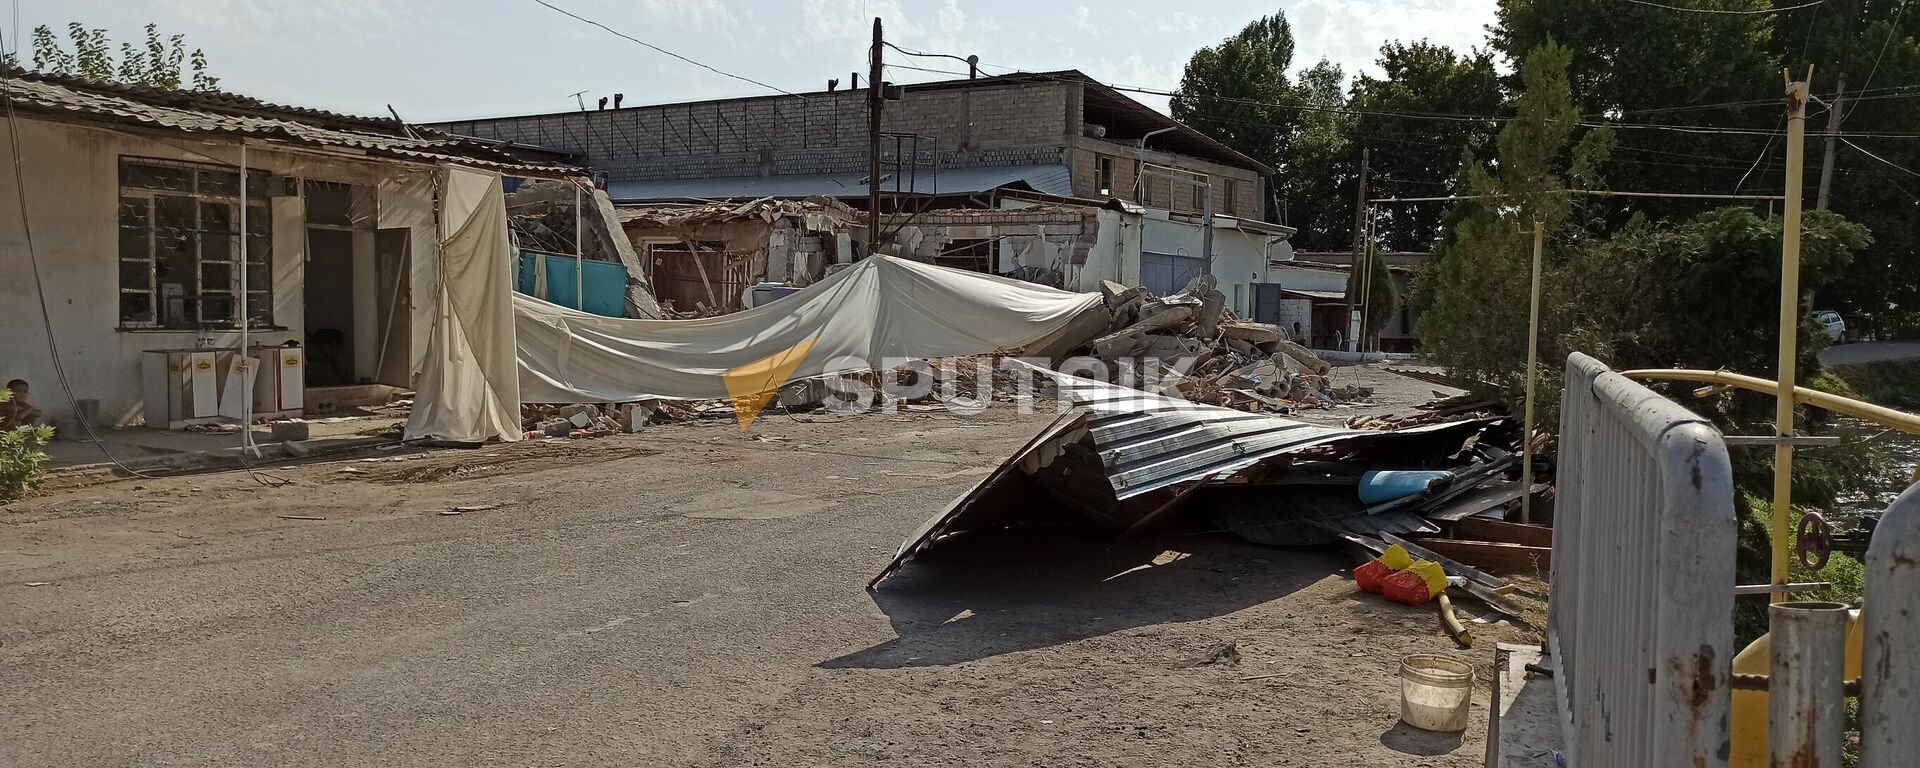 Последствия мощного взрыва на складе в Сергелийском районе Ташкента - Sputnik Узбекистан, 1920, 01.08.2021